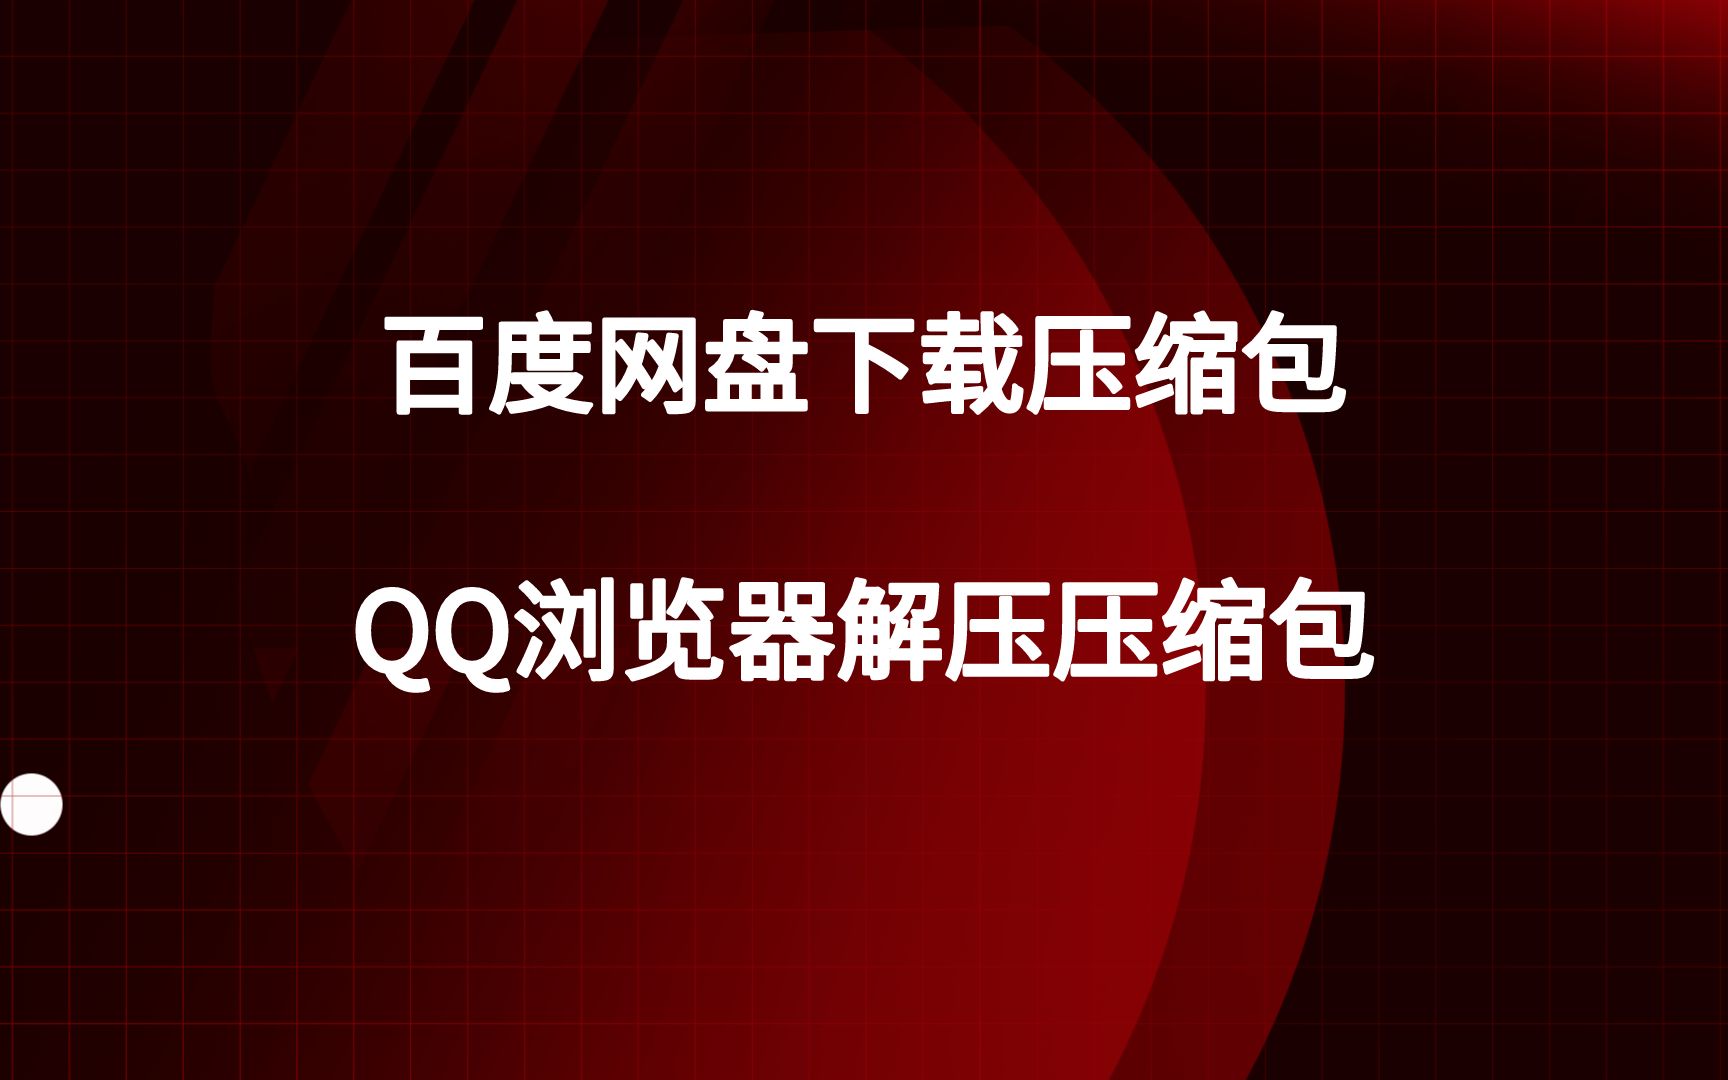 qq管家无法安装权限 百度网盘显示下载目录没有权限怎么办-唐朝资源网